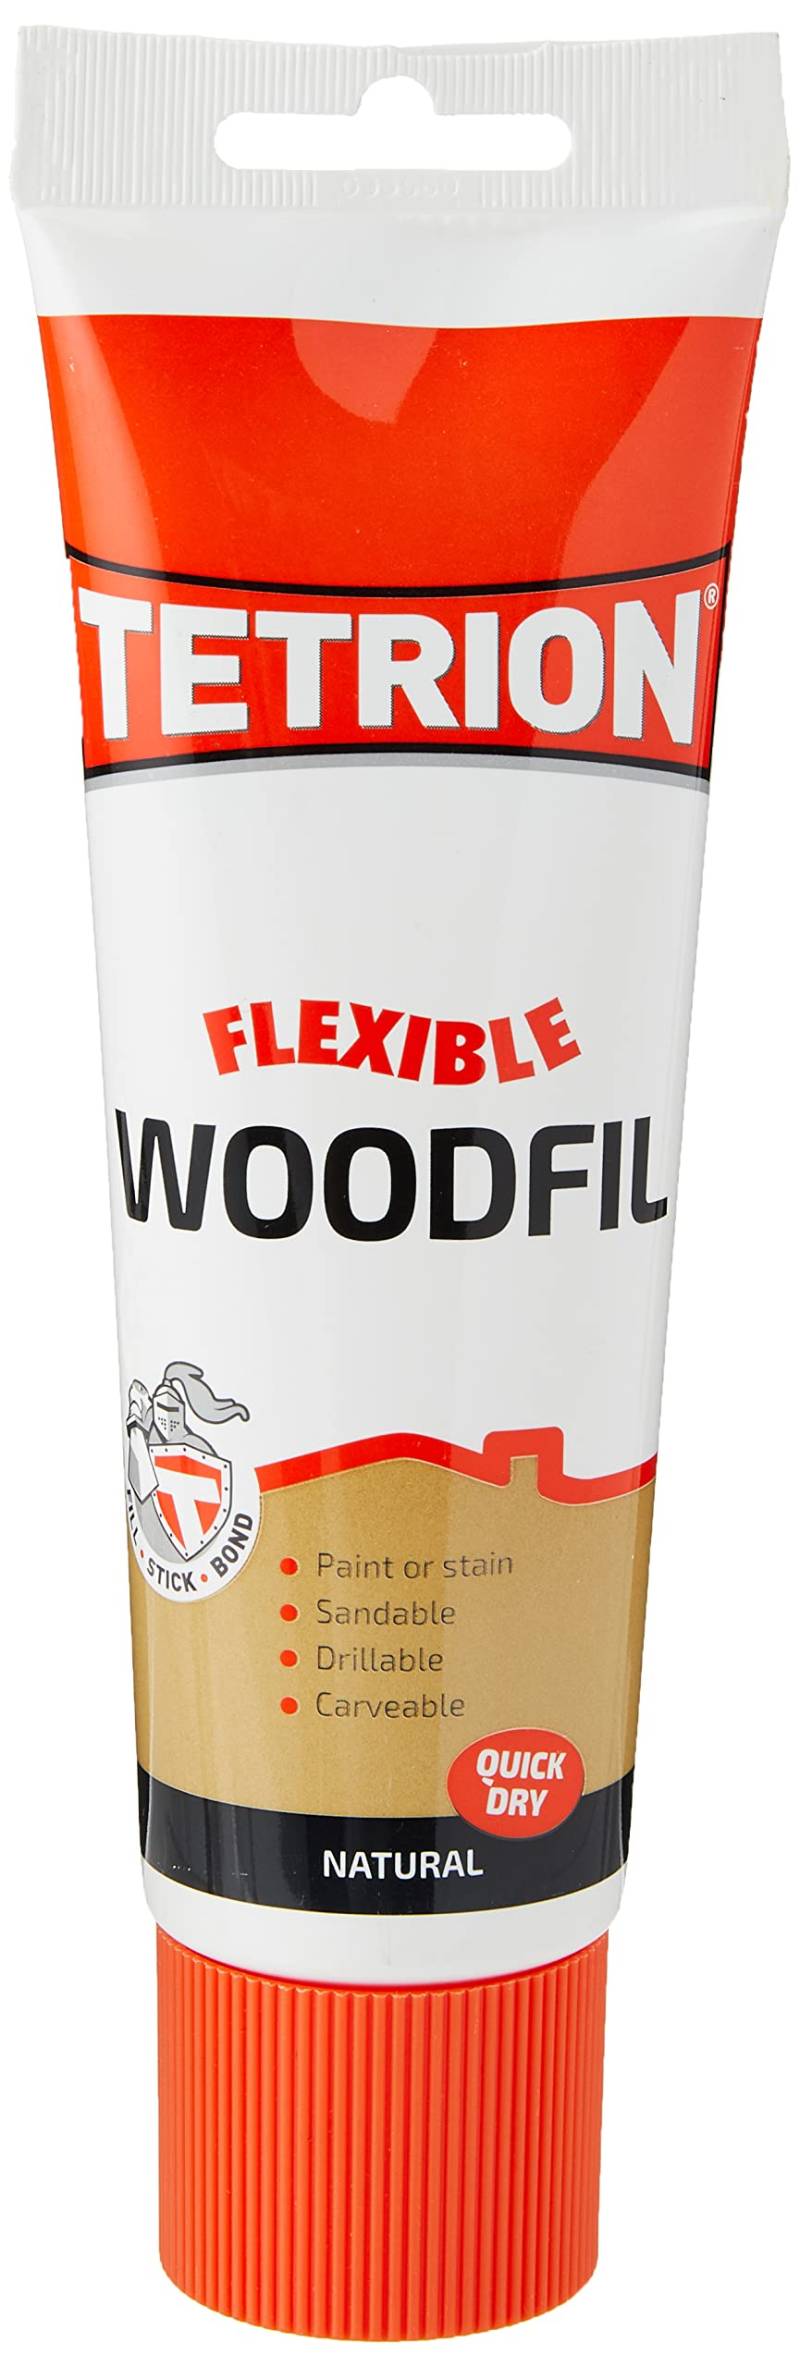 Tetrion wfn330 Flexible bereit gemischt woodfil von Tetrion